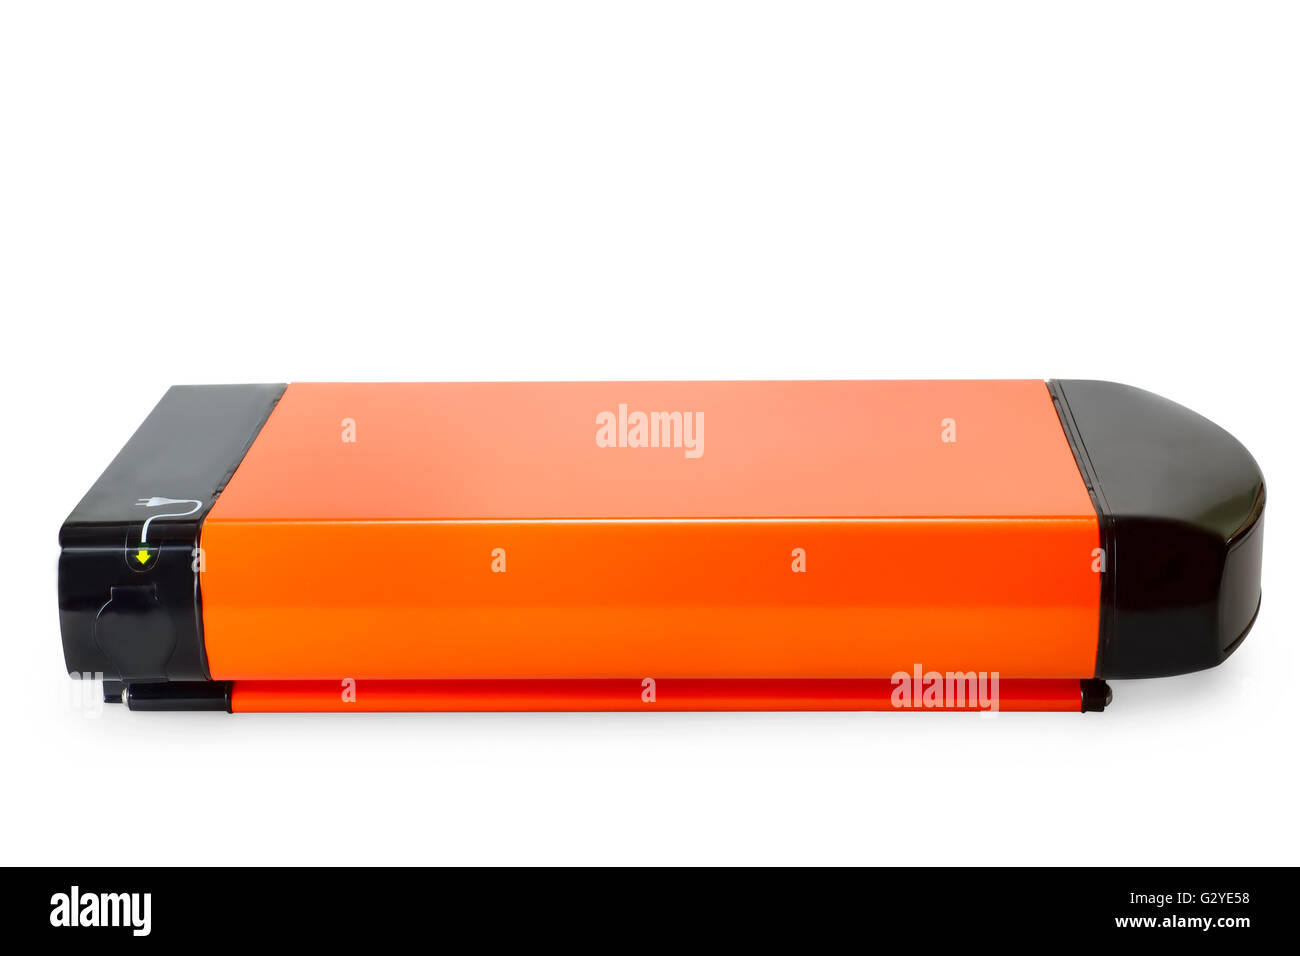 Orange batteria agli ioni di litio per e-bike. Isolato su bianco con tracciato di ritaglio Foto Stock